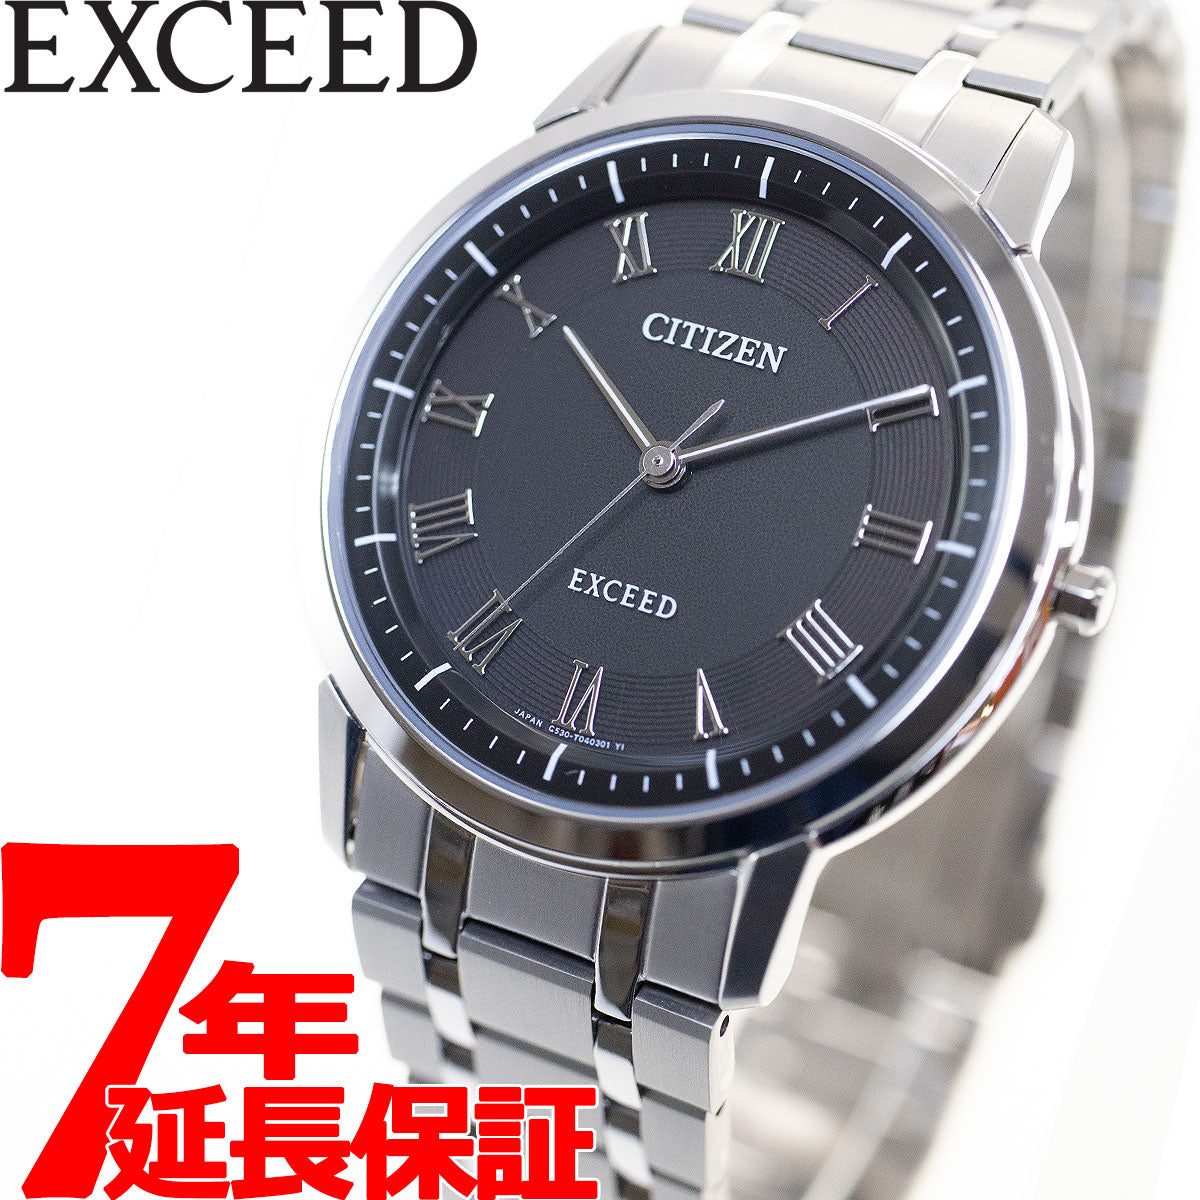 シチズン CITIZEN 腕時計 メンズ AR4000-63E エクシード エコ・ドライブ 年差±10秒 EXCEED エコ・ドライブ（G530） ブラックxシルバー アナログ表示